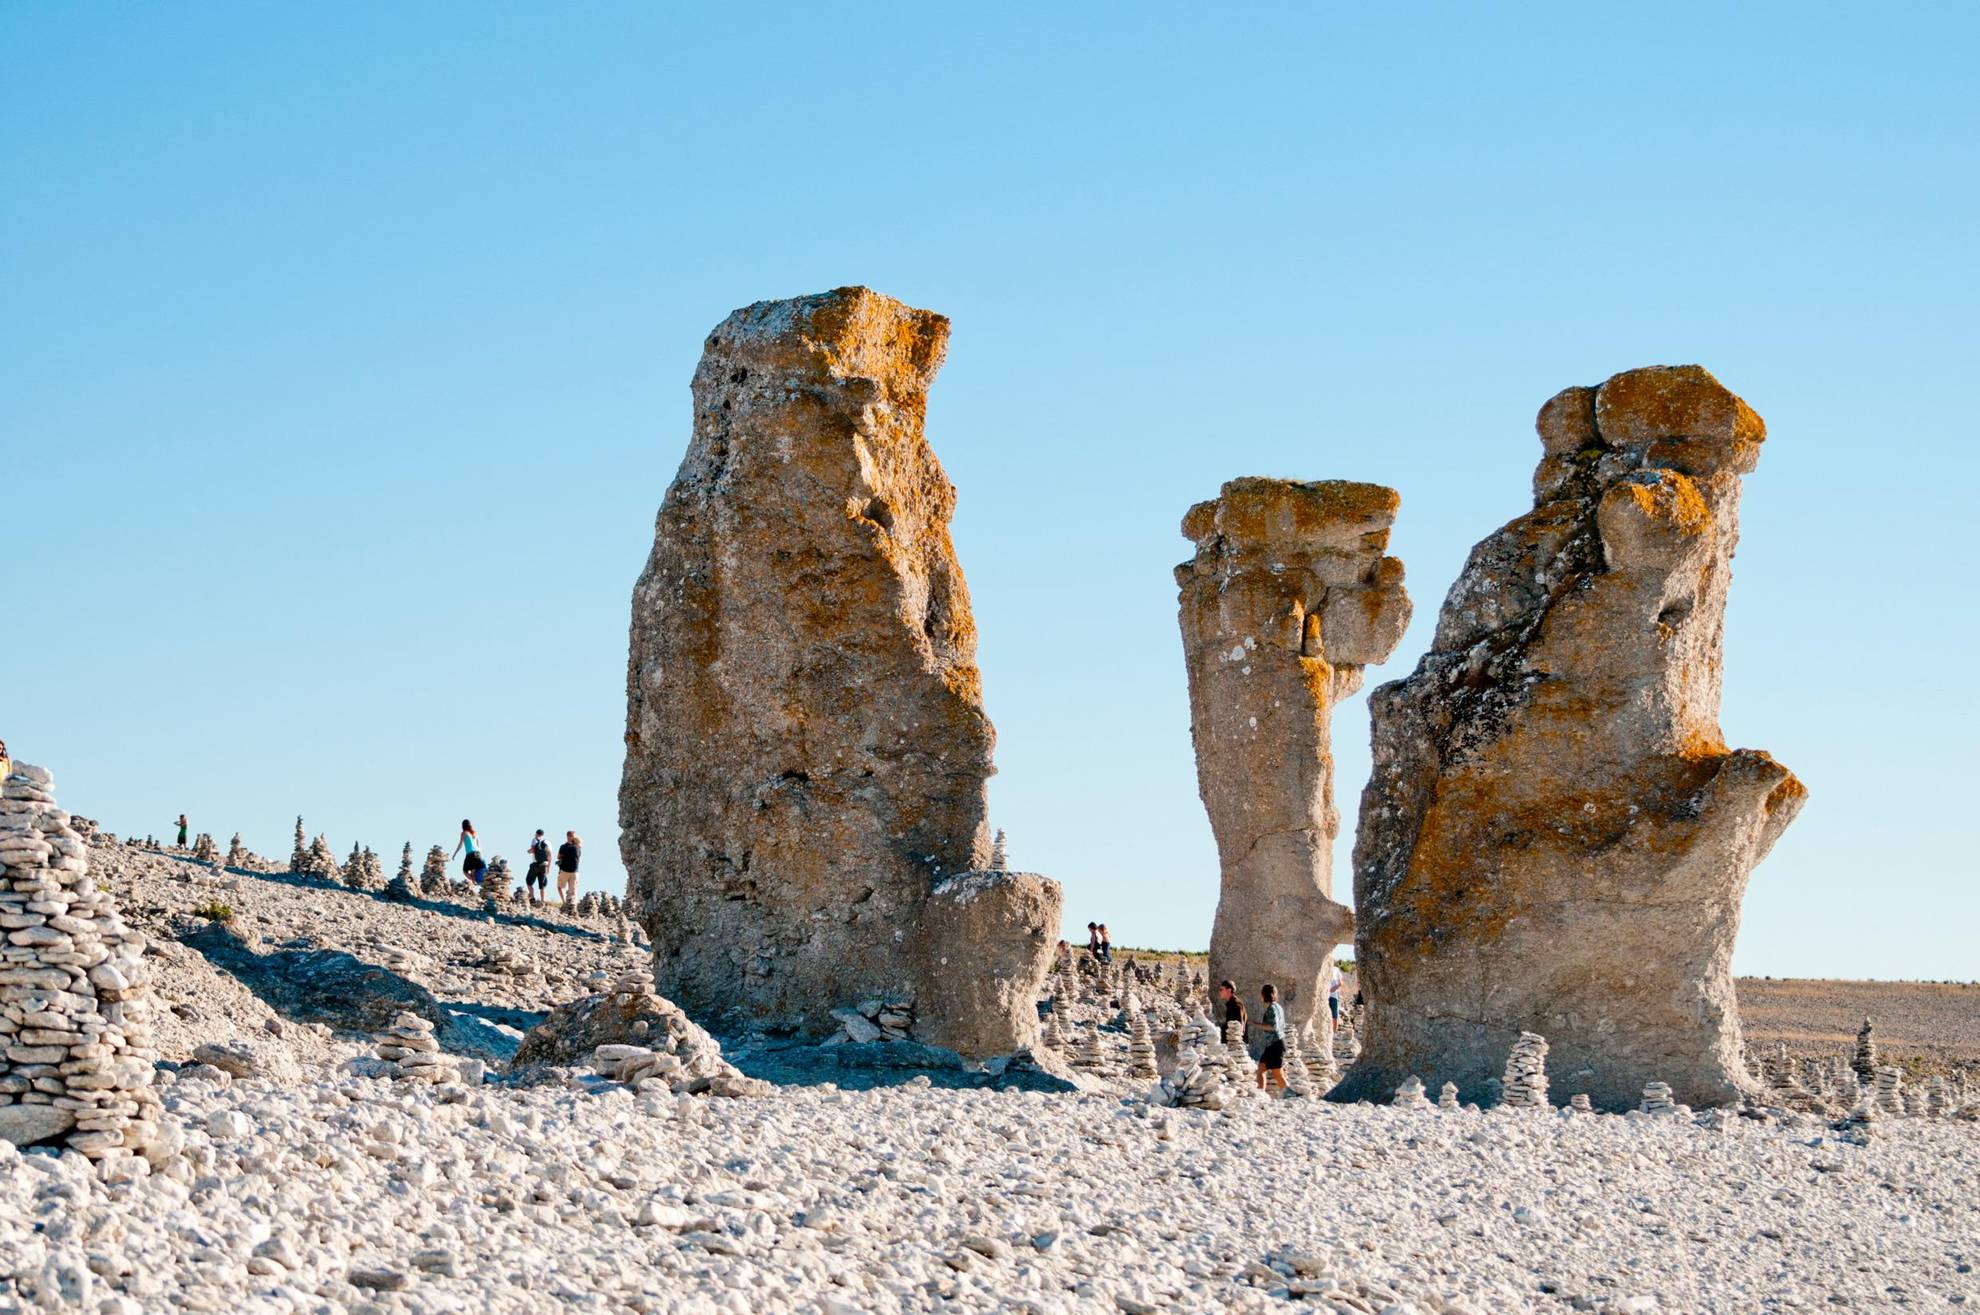 Des monolithes de calcaire se trouvent sur une plage rocheuse de Gotland. En arrière-plan, il y a quelques personnes qui marchent.